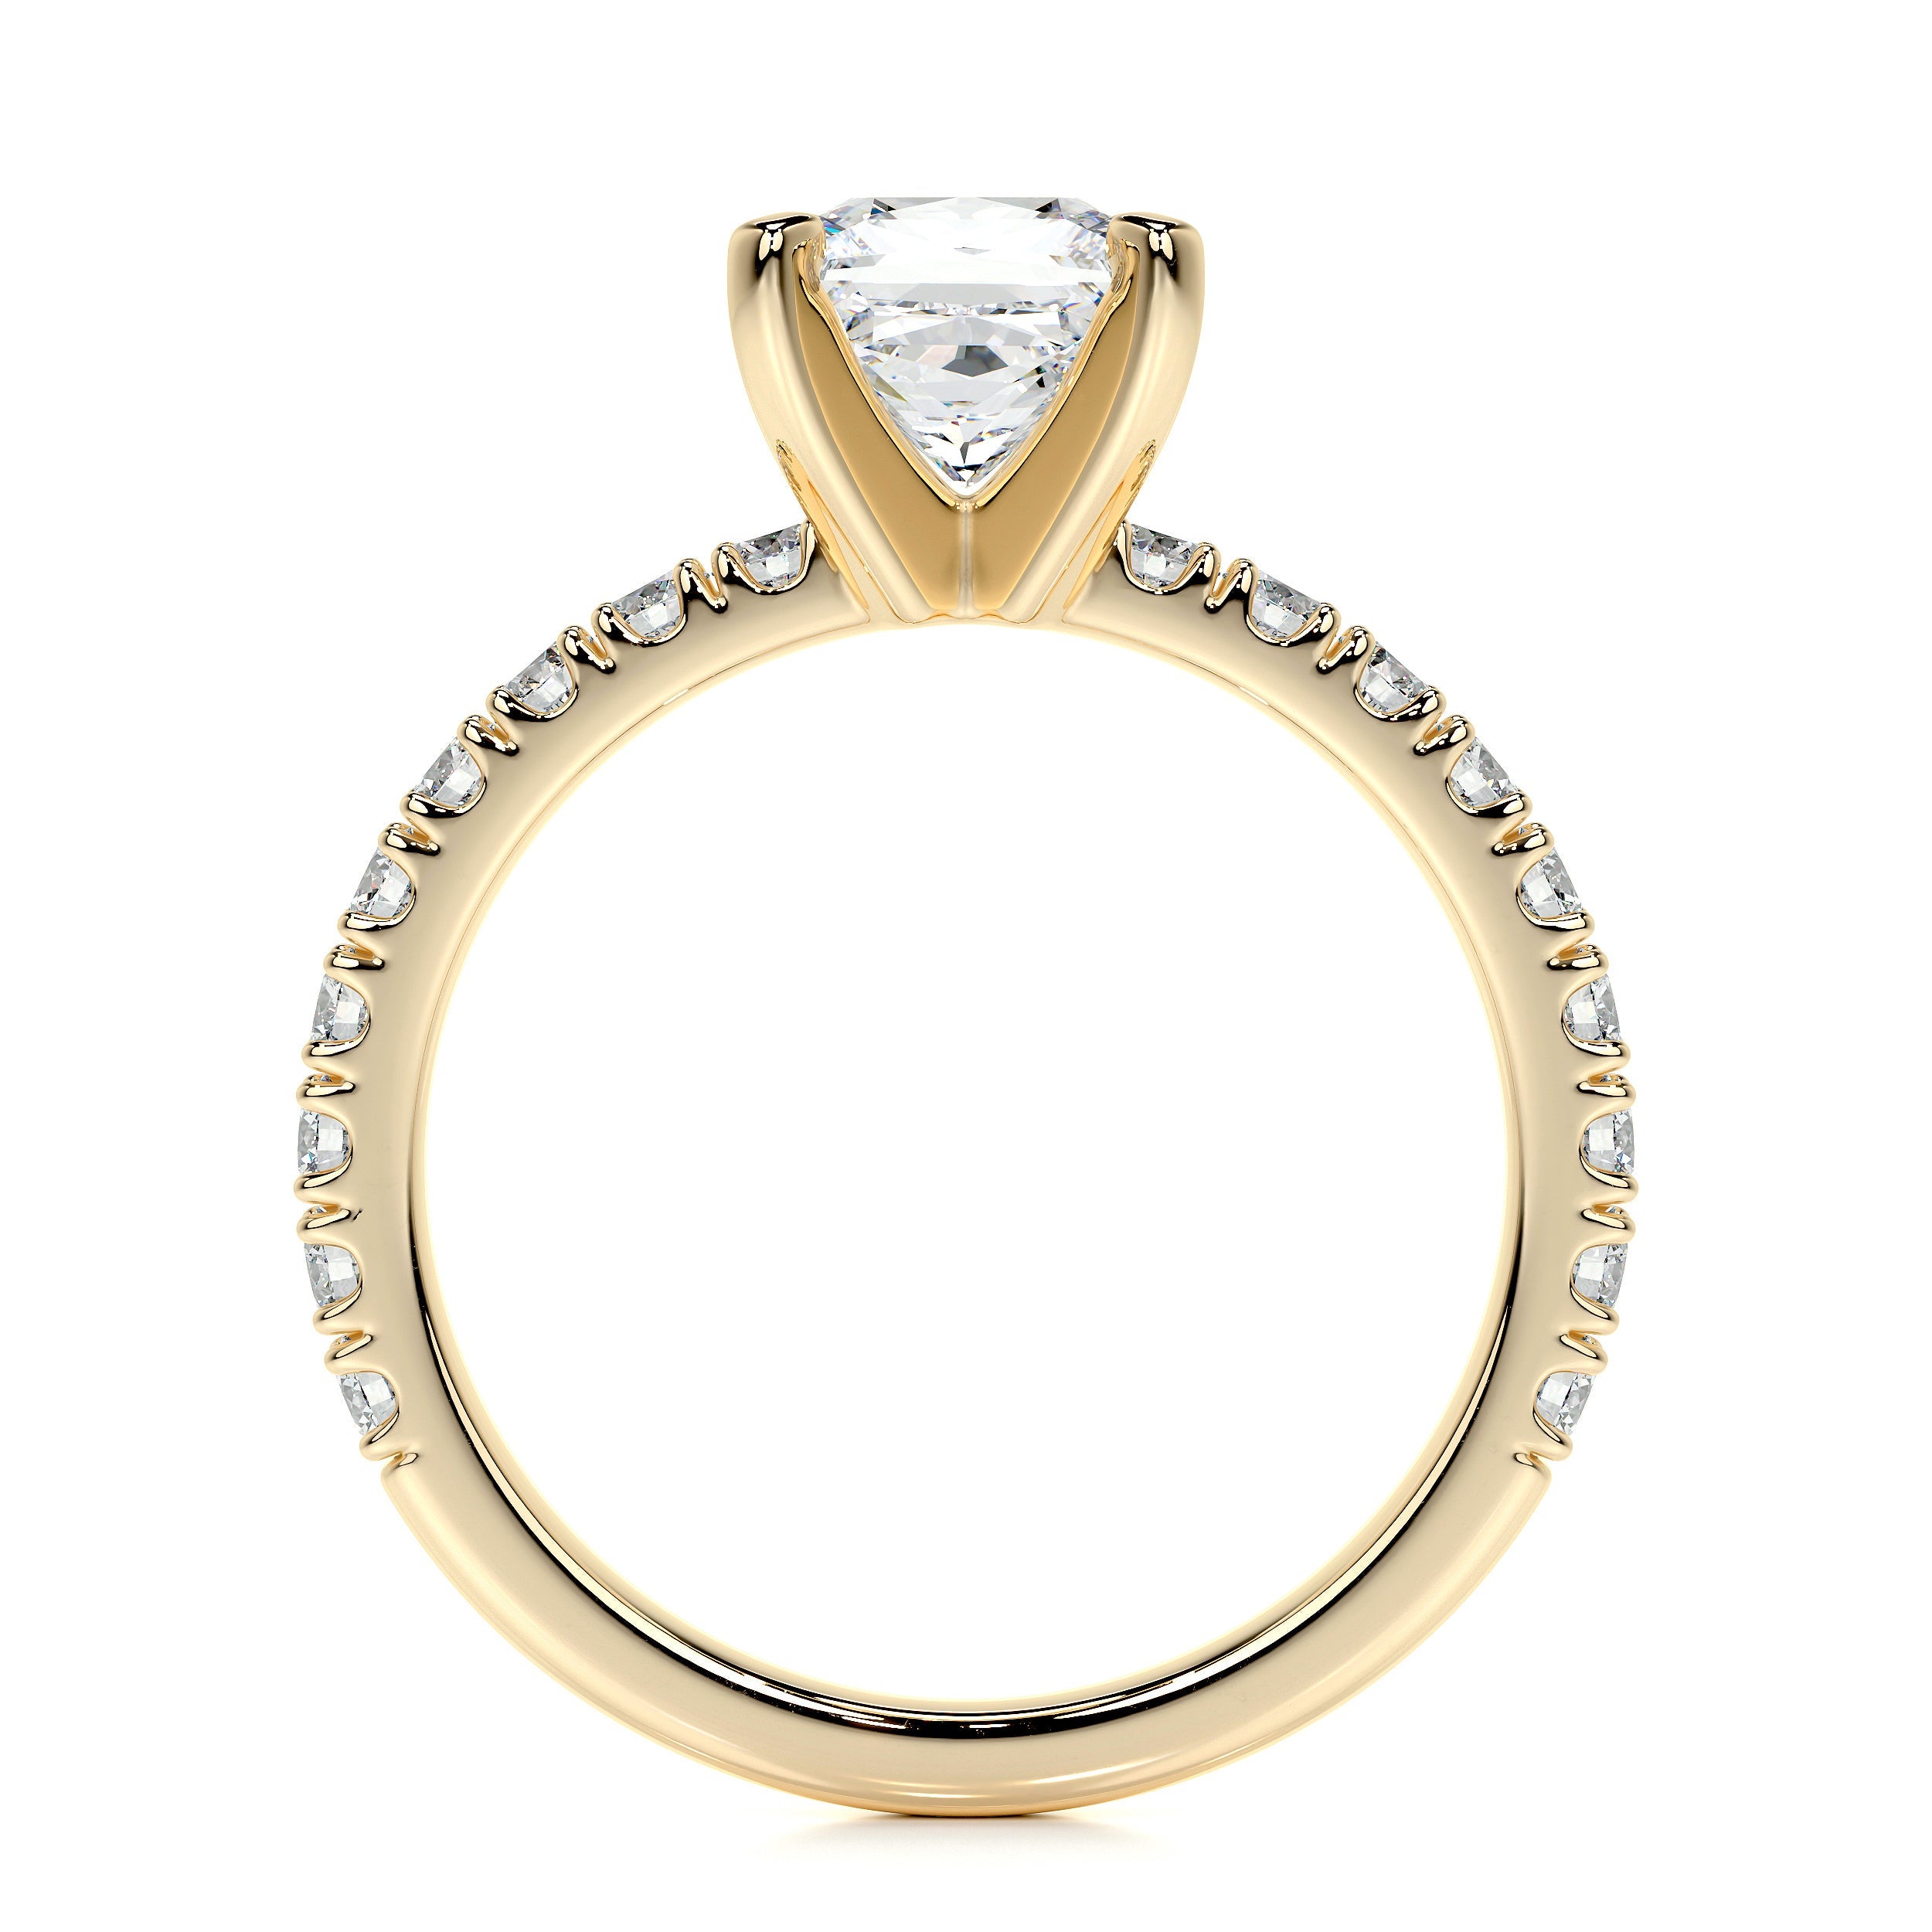 Blair Lab Grown Diamond Ring   (1.5 Carat) -18K Yellow Gold